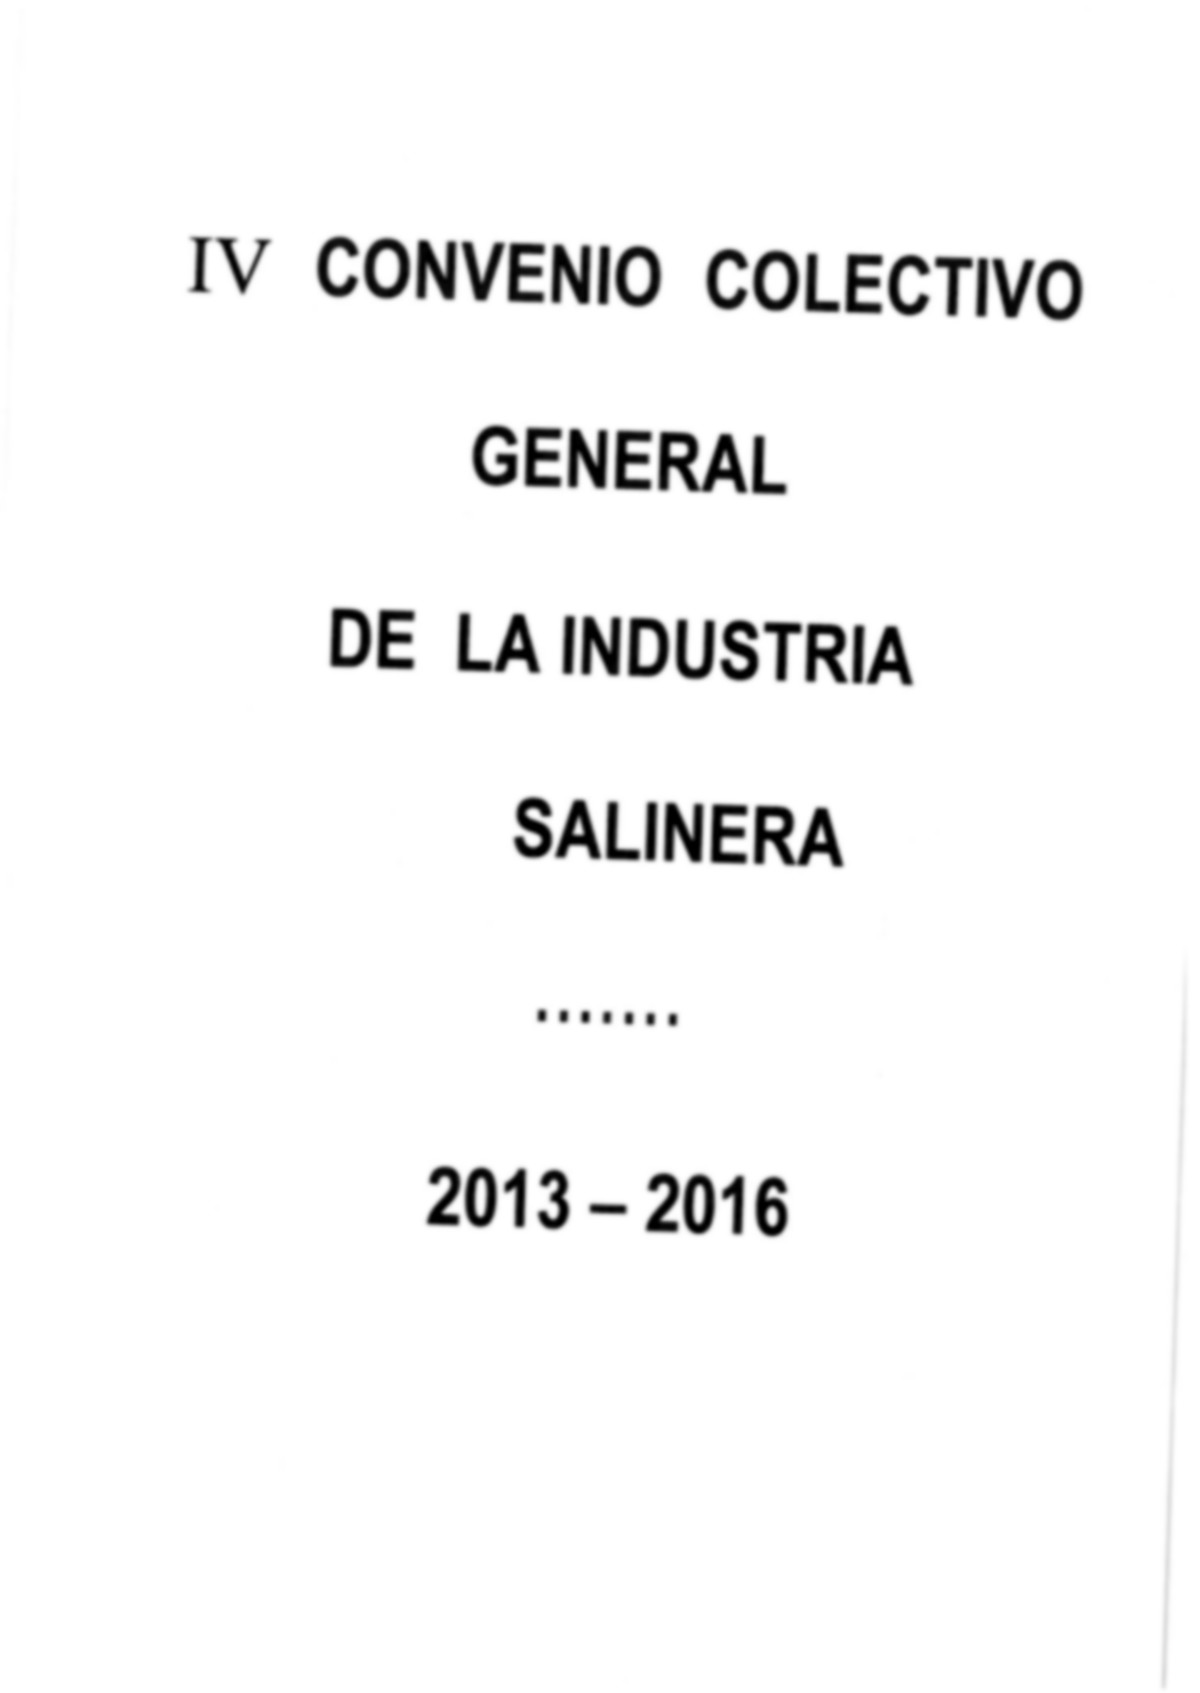 Covenio colectivo general de la industria salinera 2013 - 2016